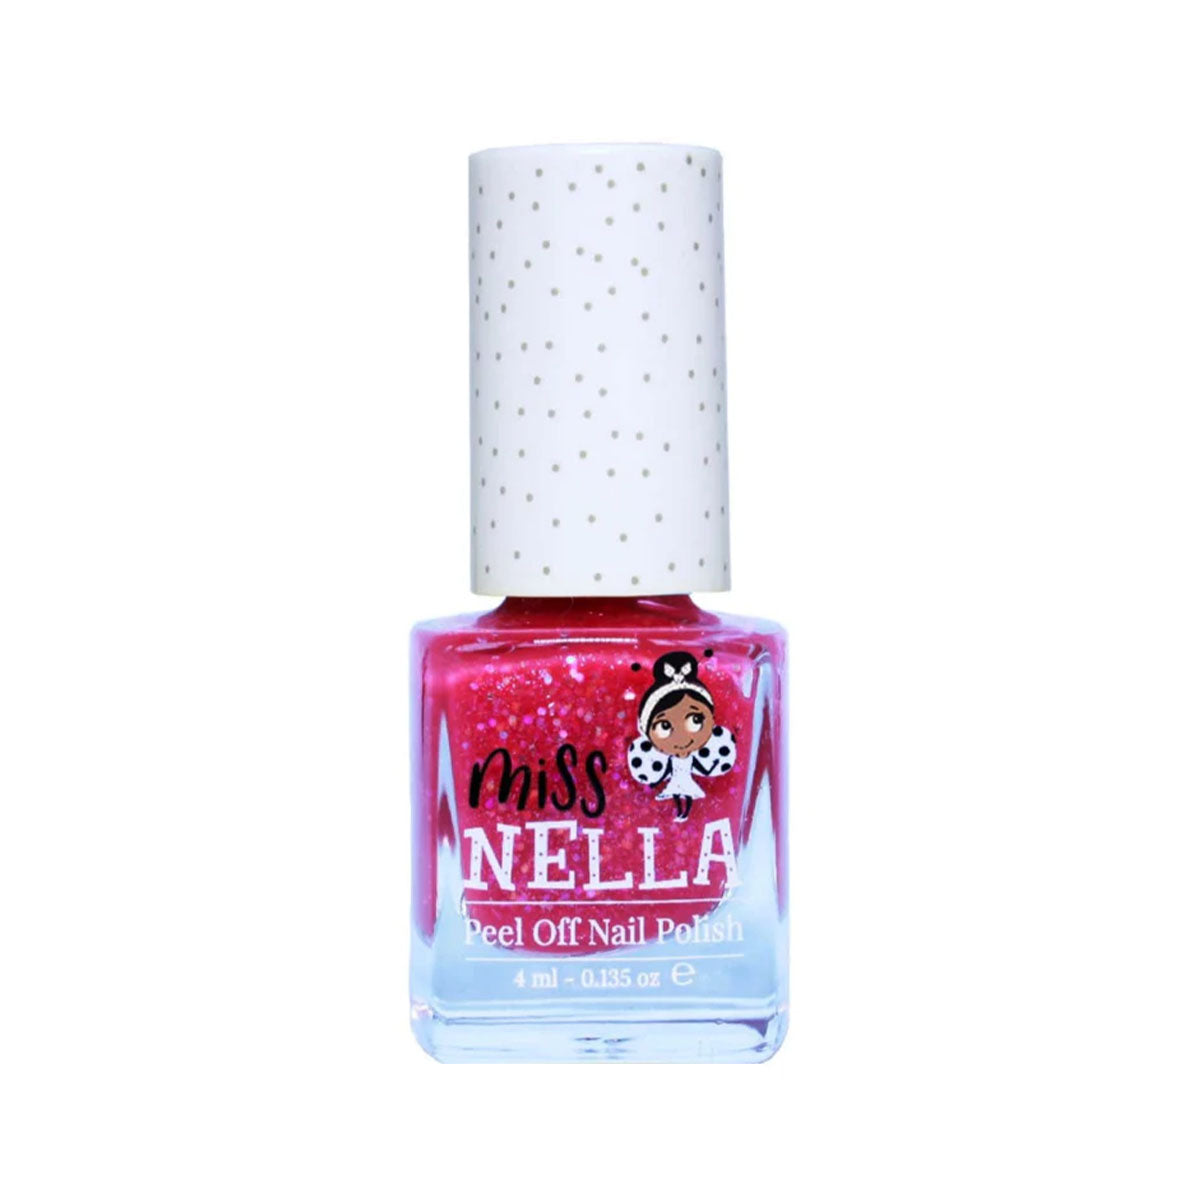 Laat de nageltjes van jouw kindje shinen met de nagellak sugar hugs van het merk Miss Nella. De peel off nagellak is speciaal ontworpen voor kinderen en is vrij van chemicaliën. In verschillende kleuren. VanZus